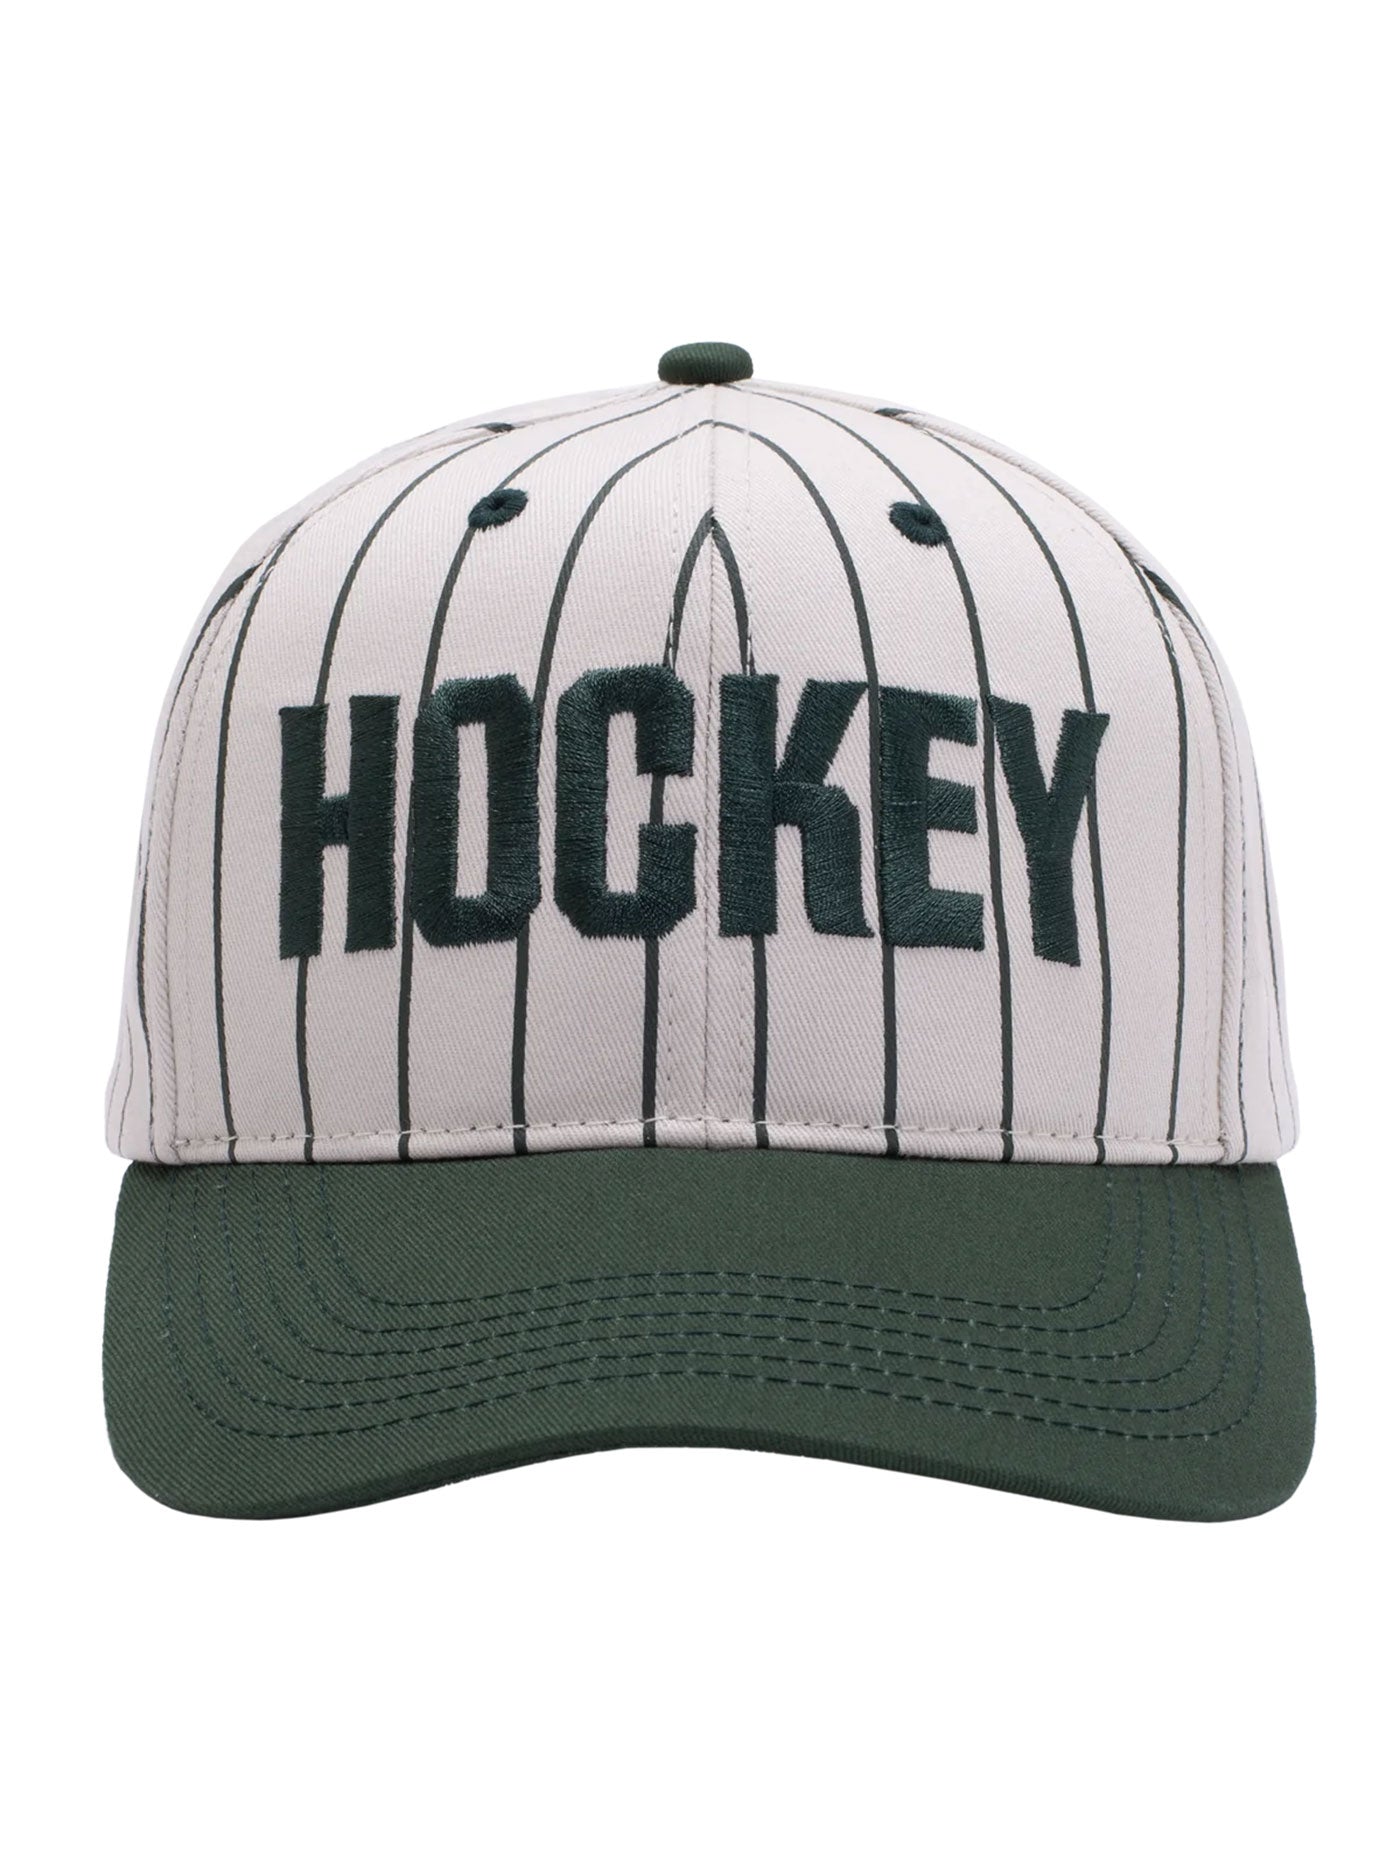 Hockey Pinstriped Snapback Hat